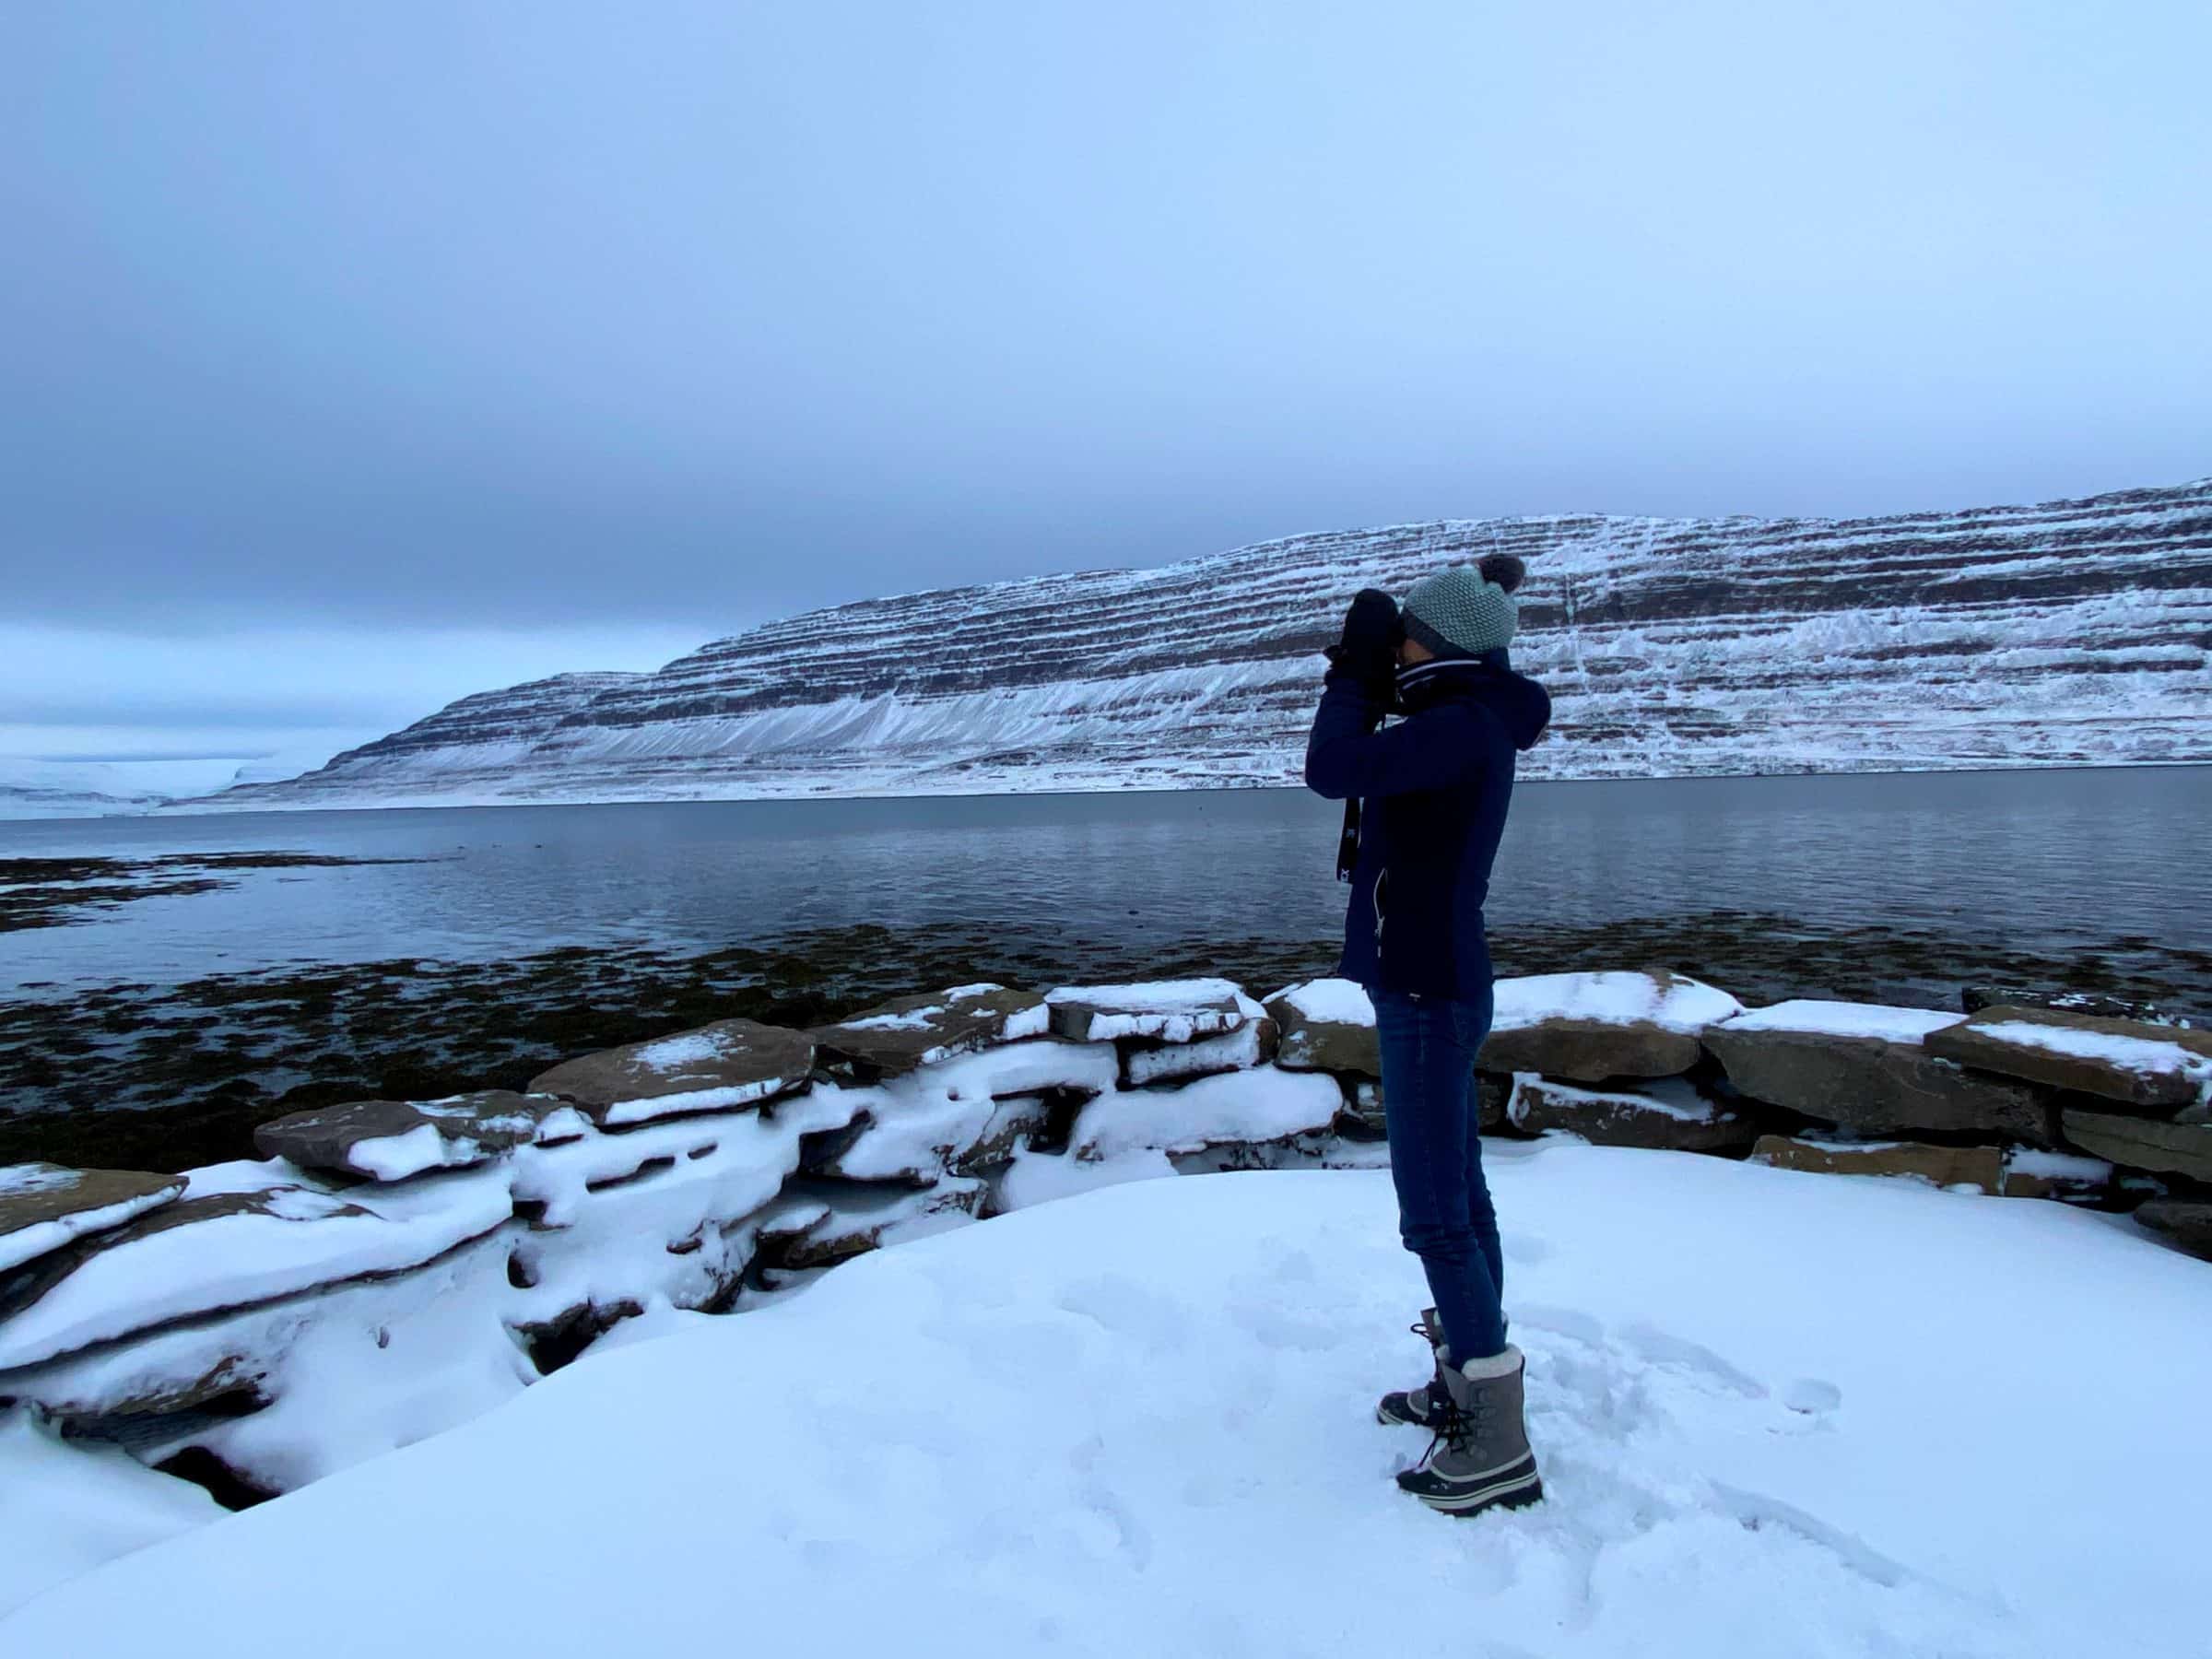 We genieten van fantastische vergezichten over de fjorden. Op diverse plekken spotten we zeehonden.